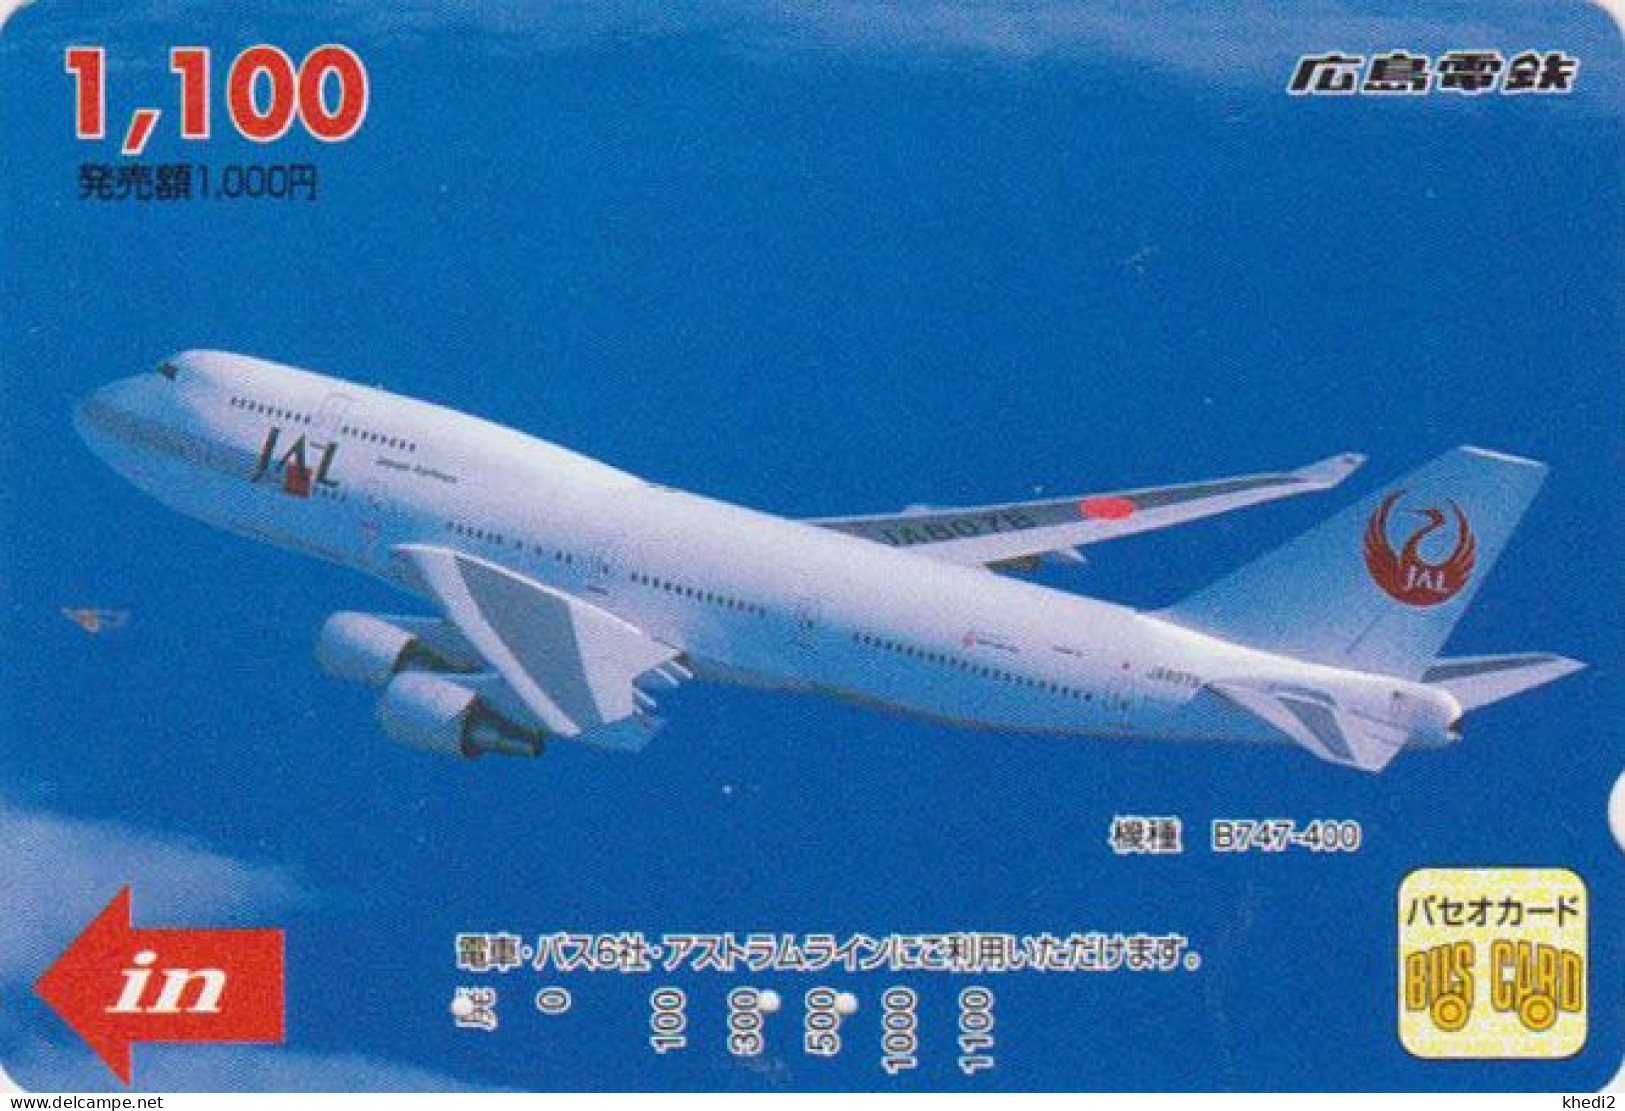 Carte Prépayée JAPON - AVION JAPAN AIRLINES - JAL Prepaid Prepaid Bus Card / V1 - Hiro 2403 - Aviones